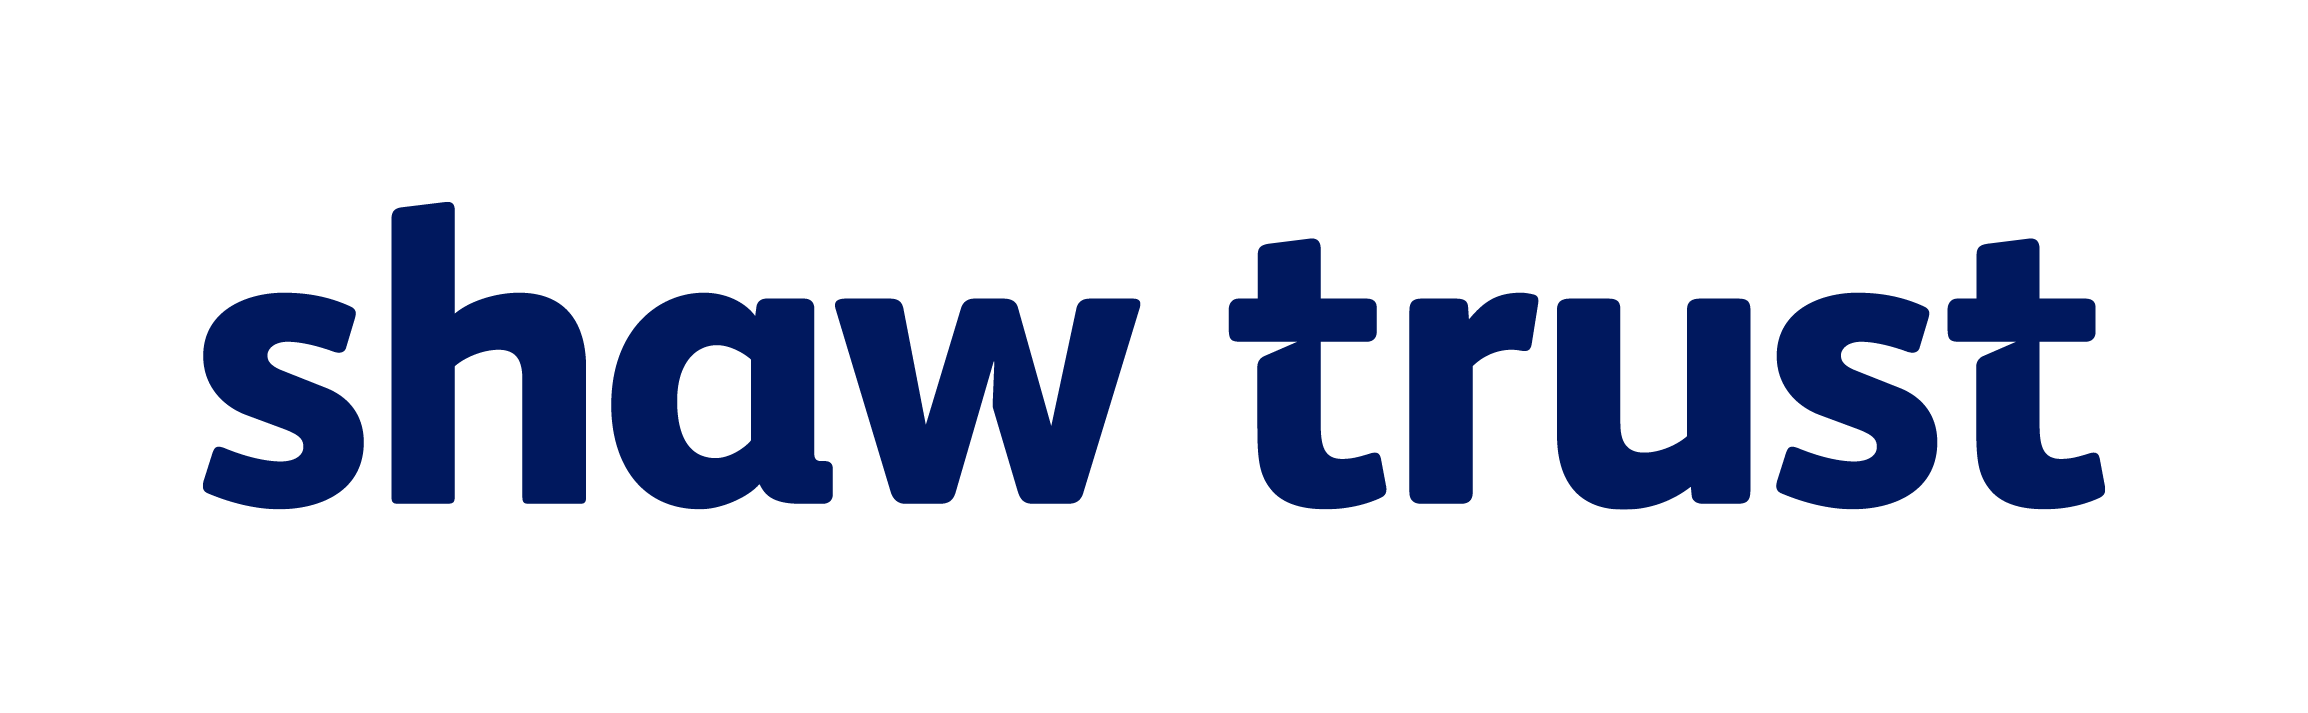 Shaw-Trust-logo-blue